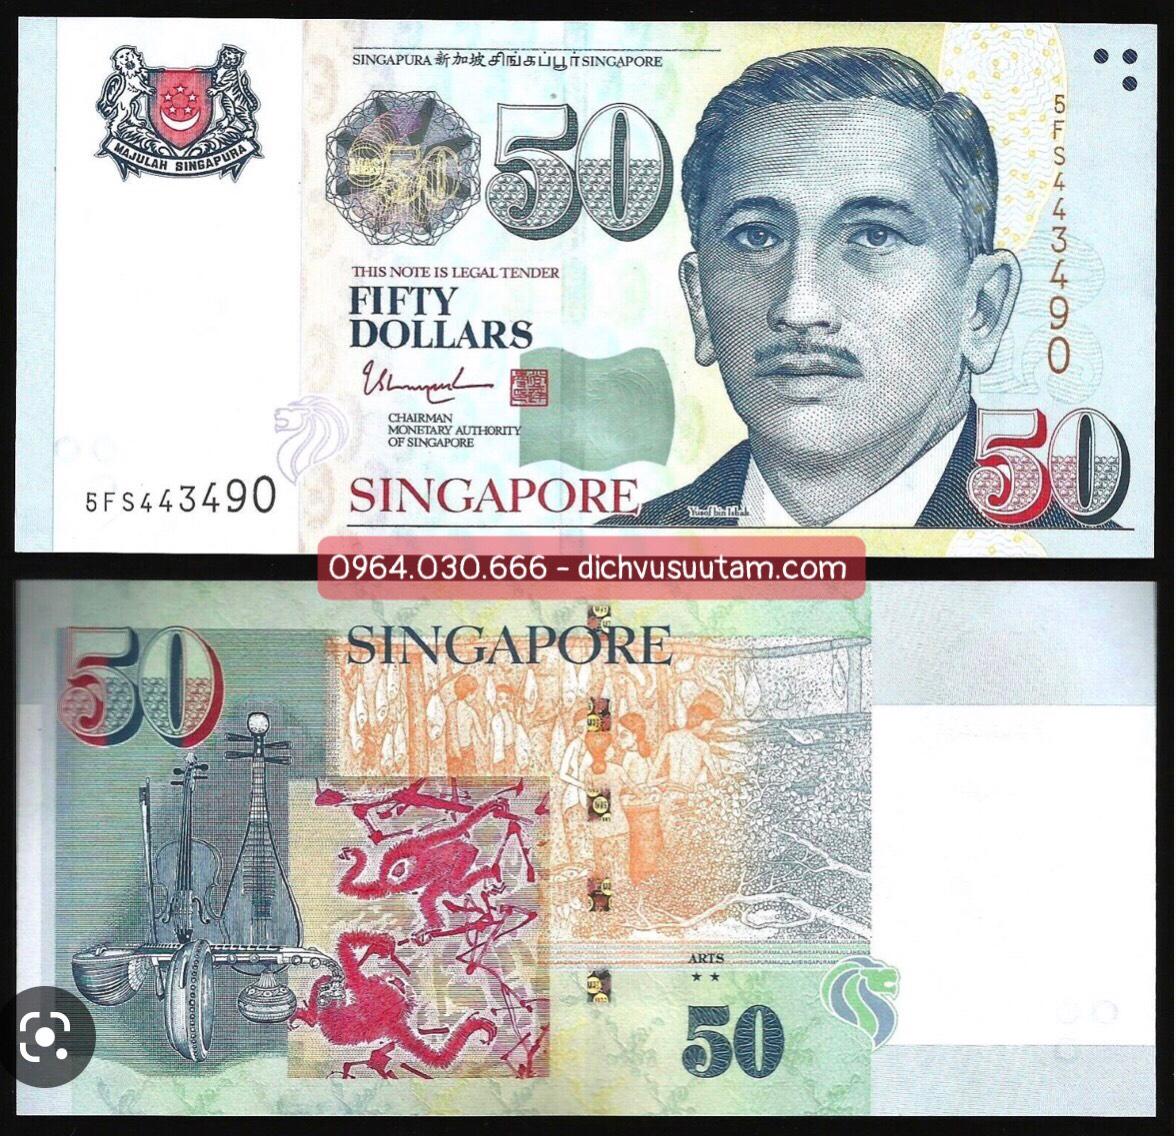 Tien Singapore loại 50 dollars giấy sưu tầm, chất lượng mới 95%